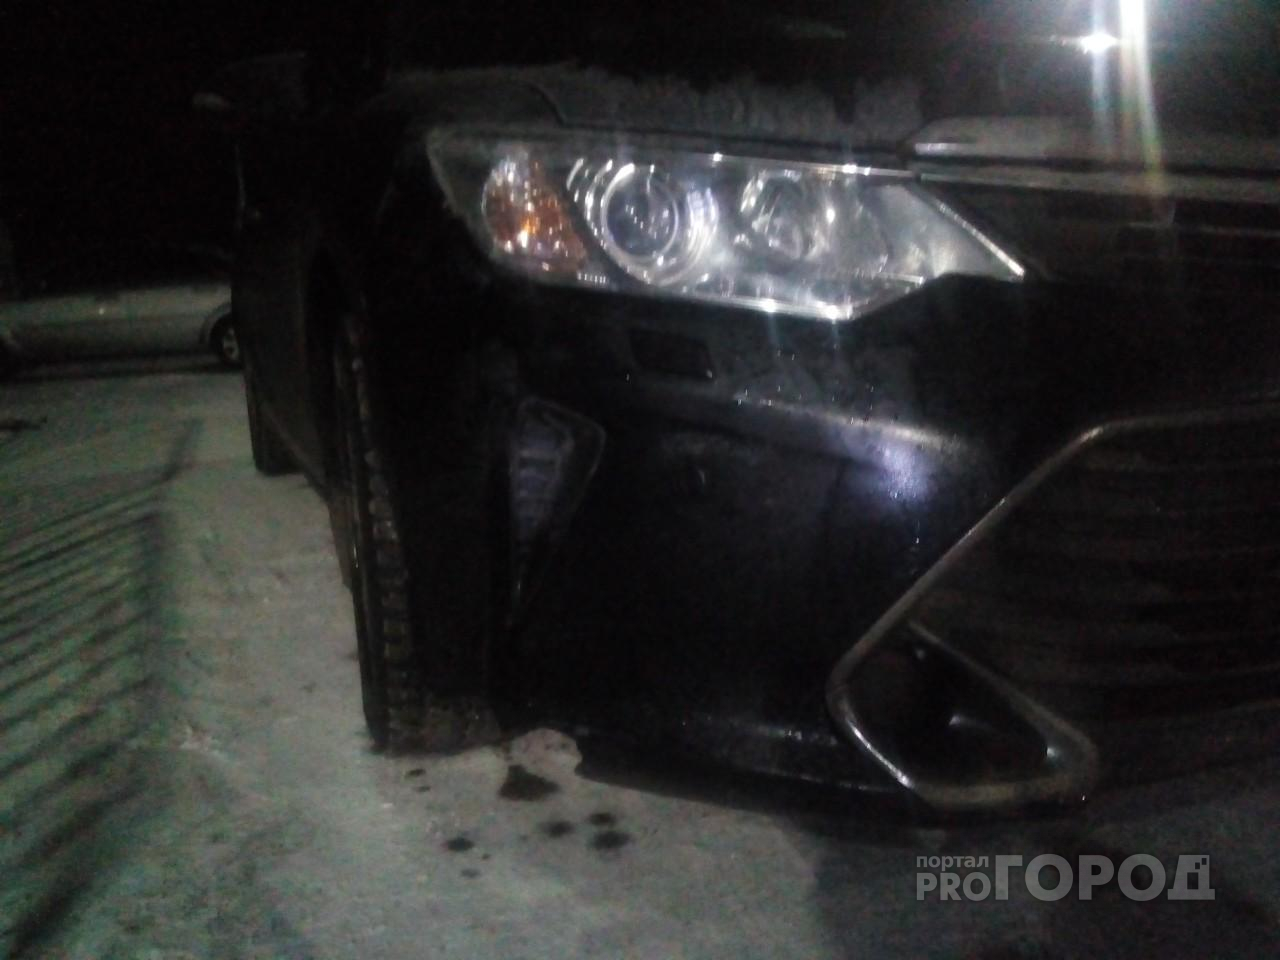 В Чувашии Toyota Camry сбила мужчину и скрылась